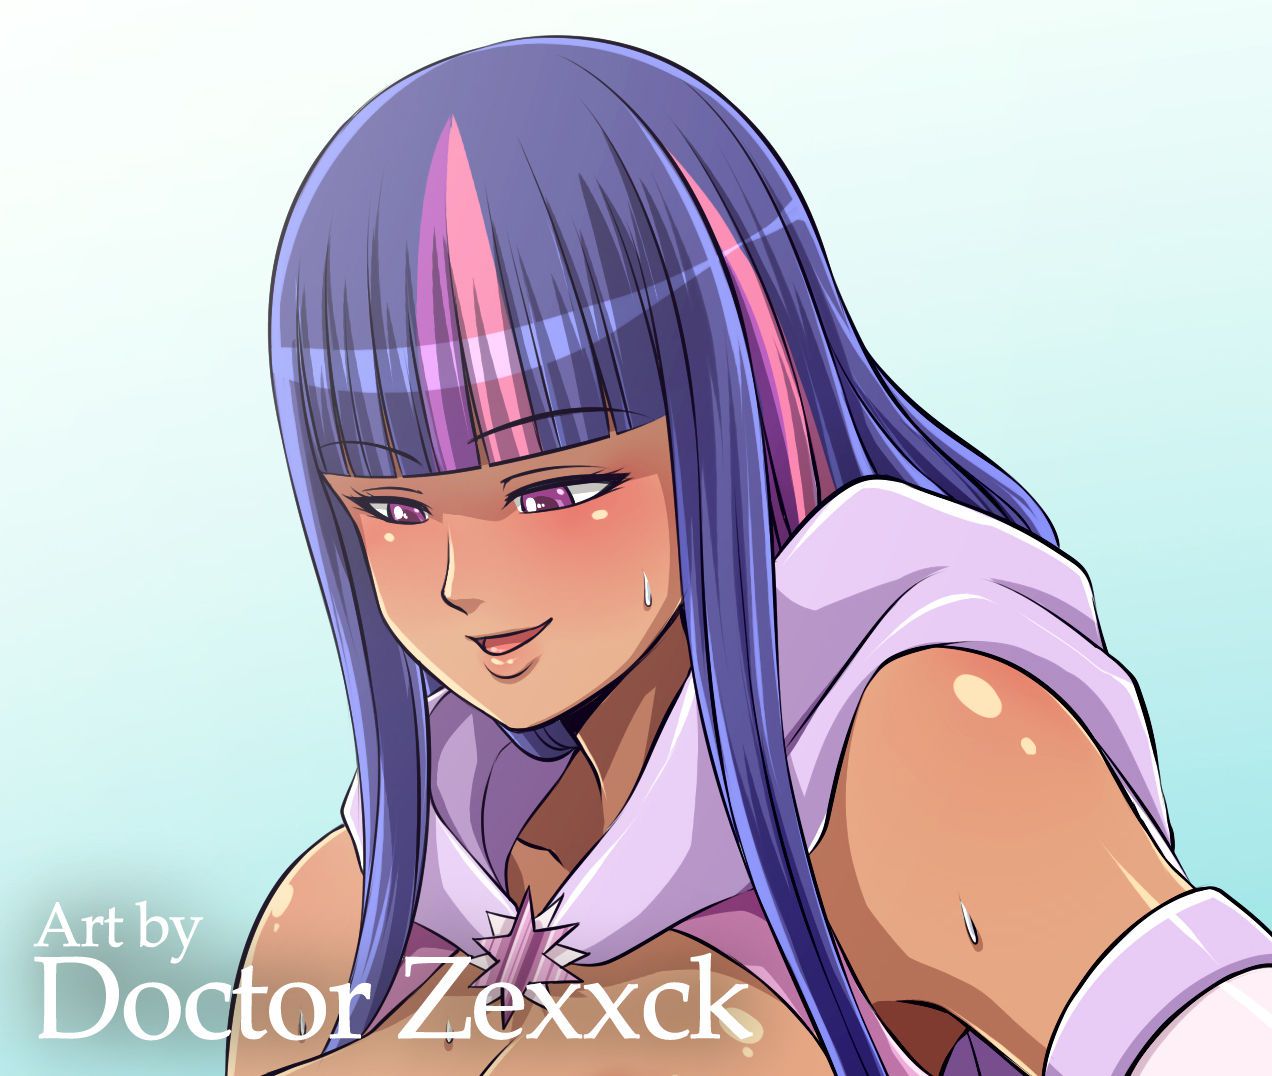 Artist - Doctor Zexxck / Dr. Zexxck 285